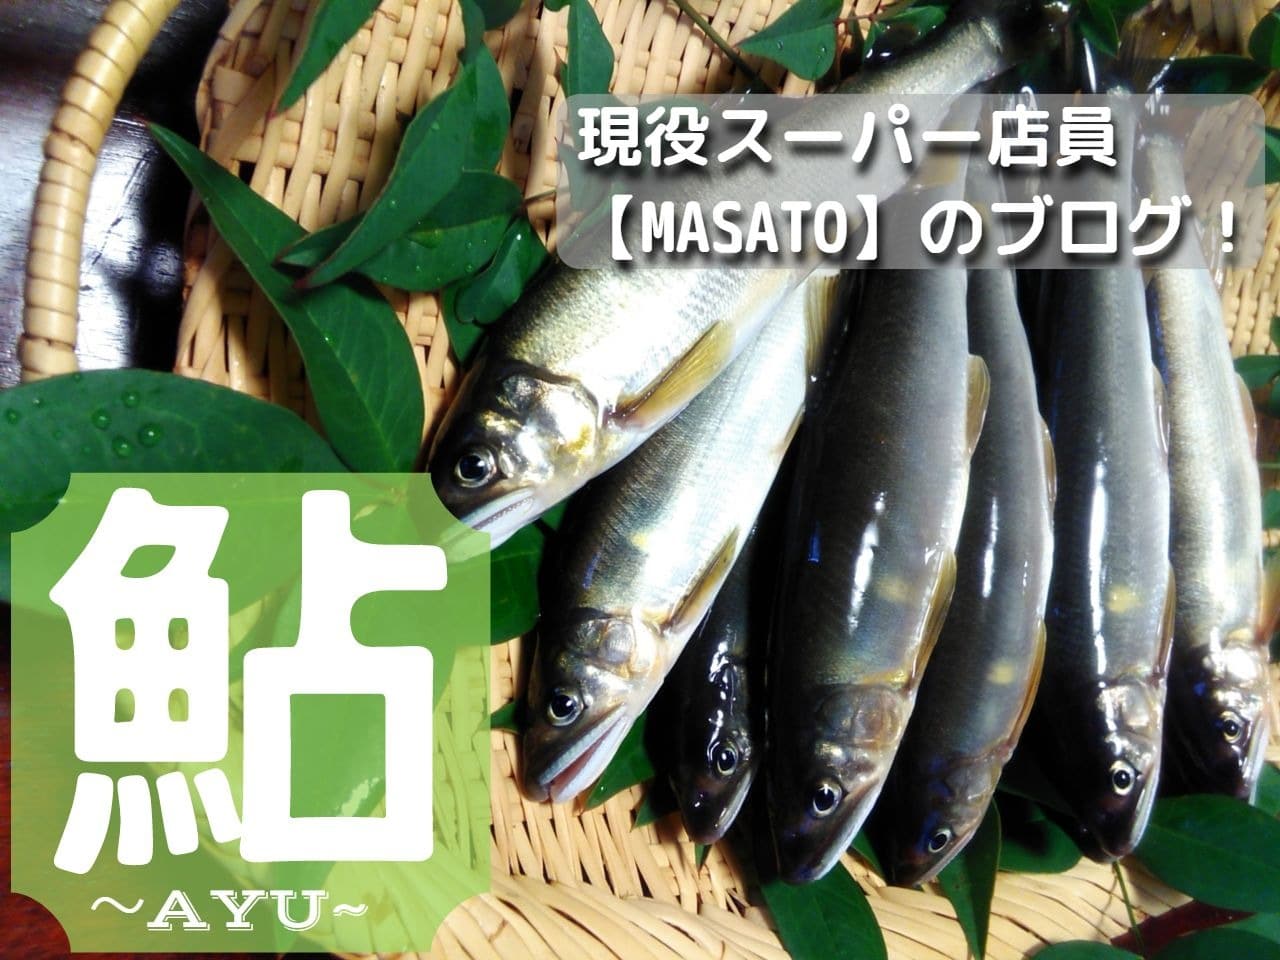 鮎 アユ の旬は 鮎の美味しい食べ方は 鮎を学ぶ 現役スーパー店員 Masato のスーパーマーケット 魚に まつわるエトセトラ